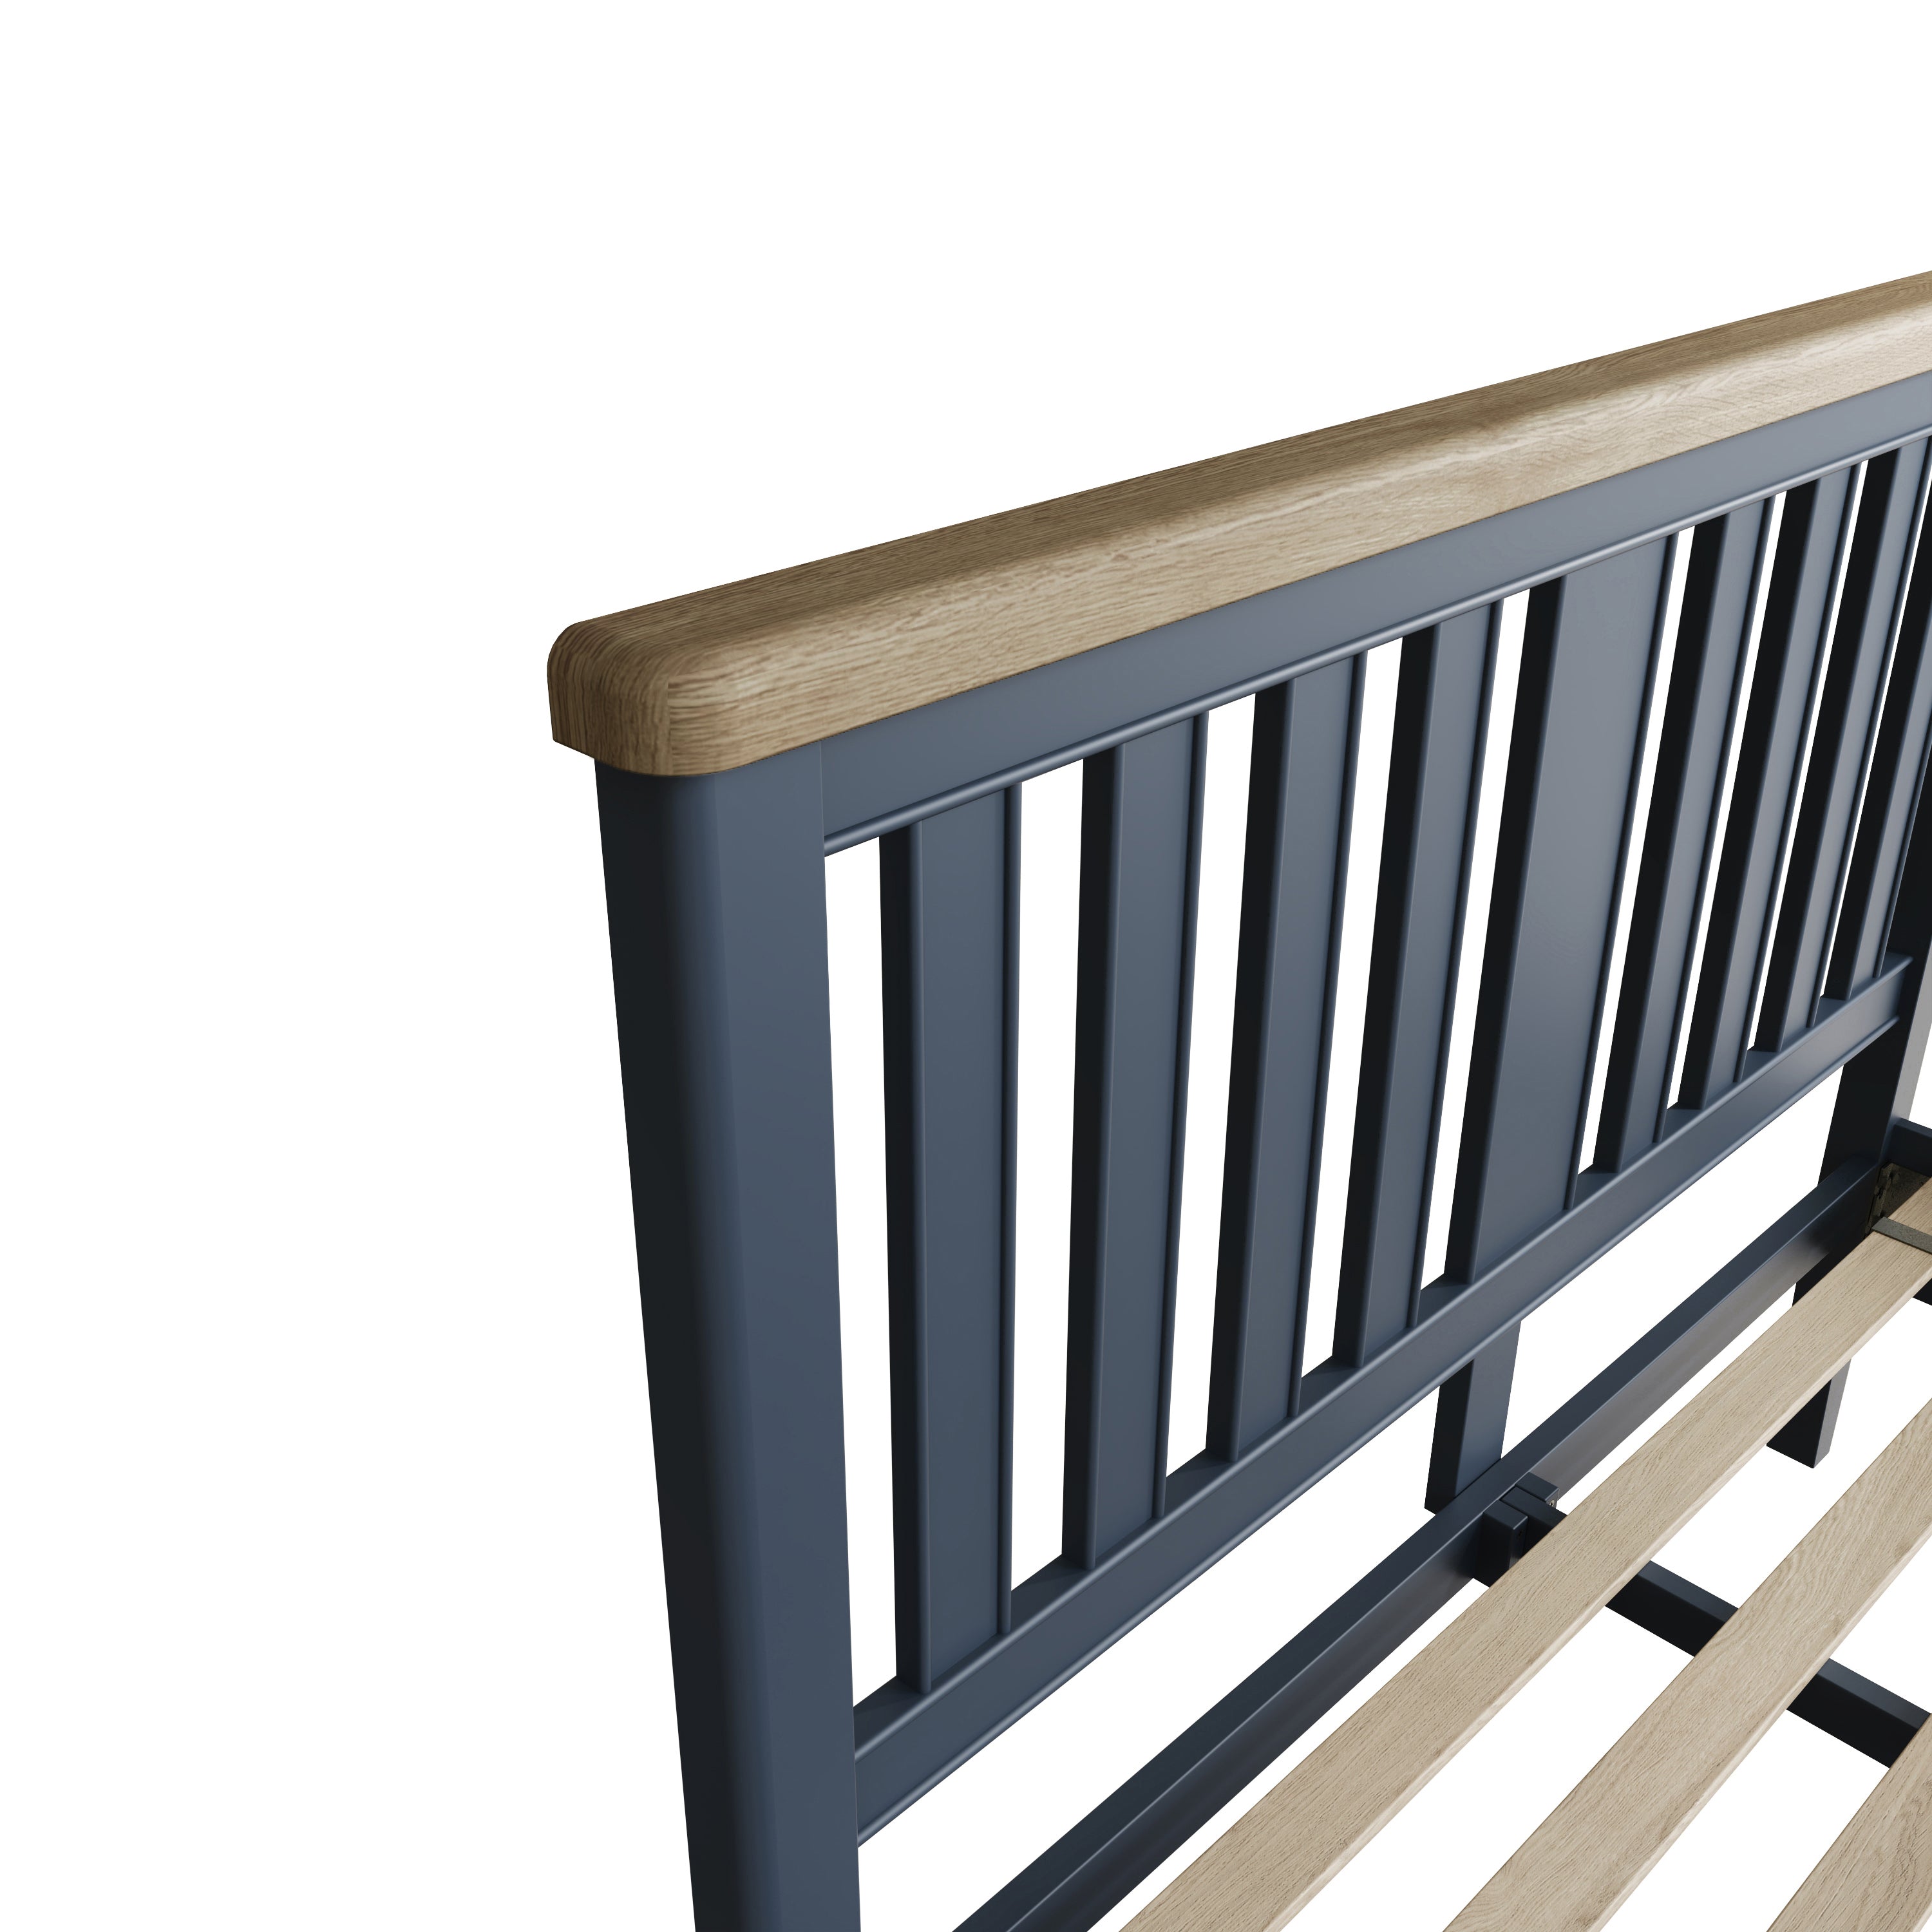 Rogate Blue 4'6 Double Bed Frame - Wooden Headboard & Low Footboard